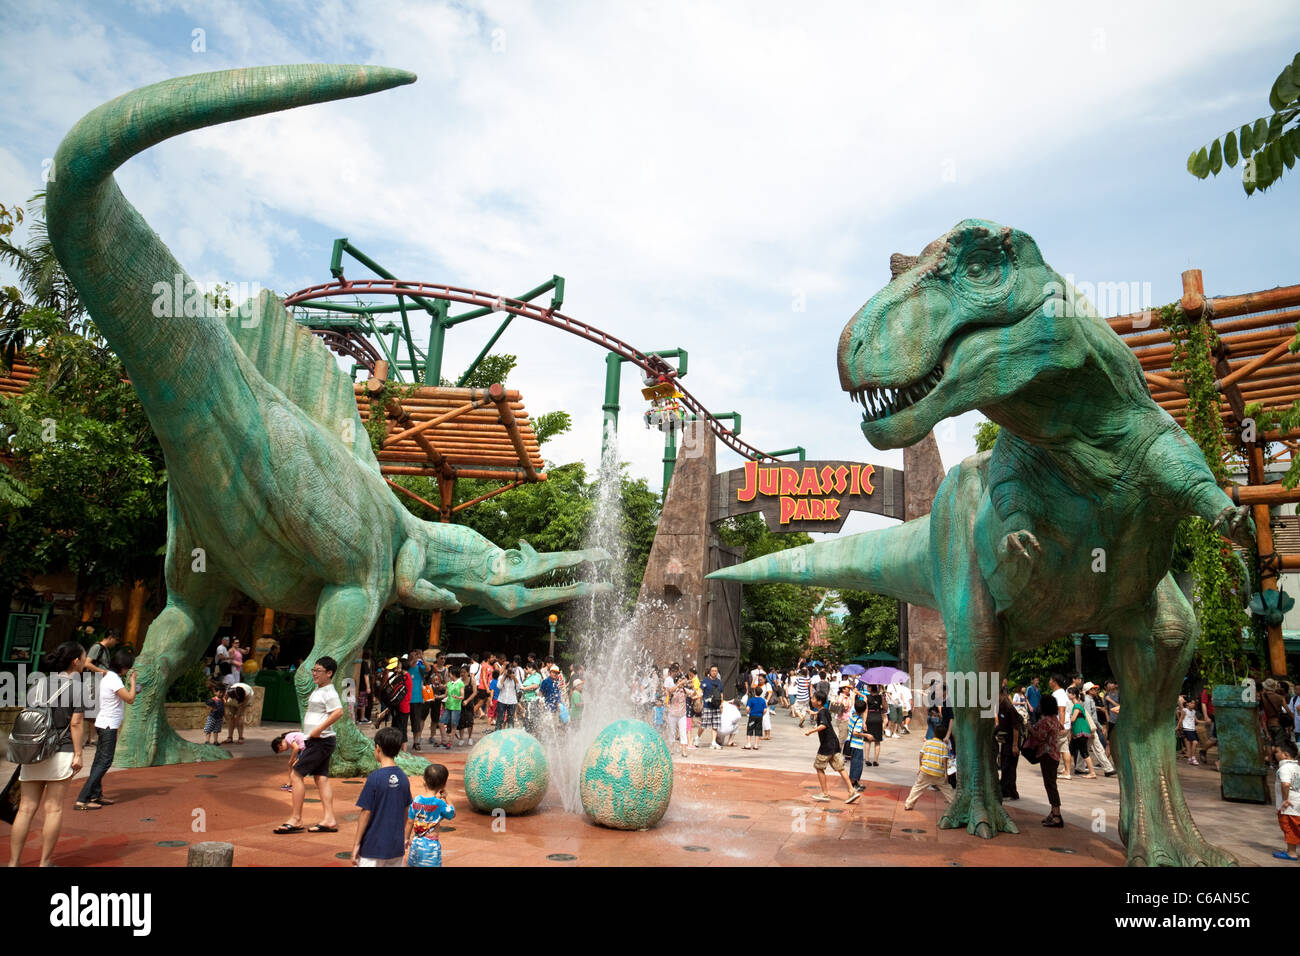 La Jurassic Park attrazione per gli Universal Studios Singapore Asia Foto Stock